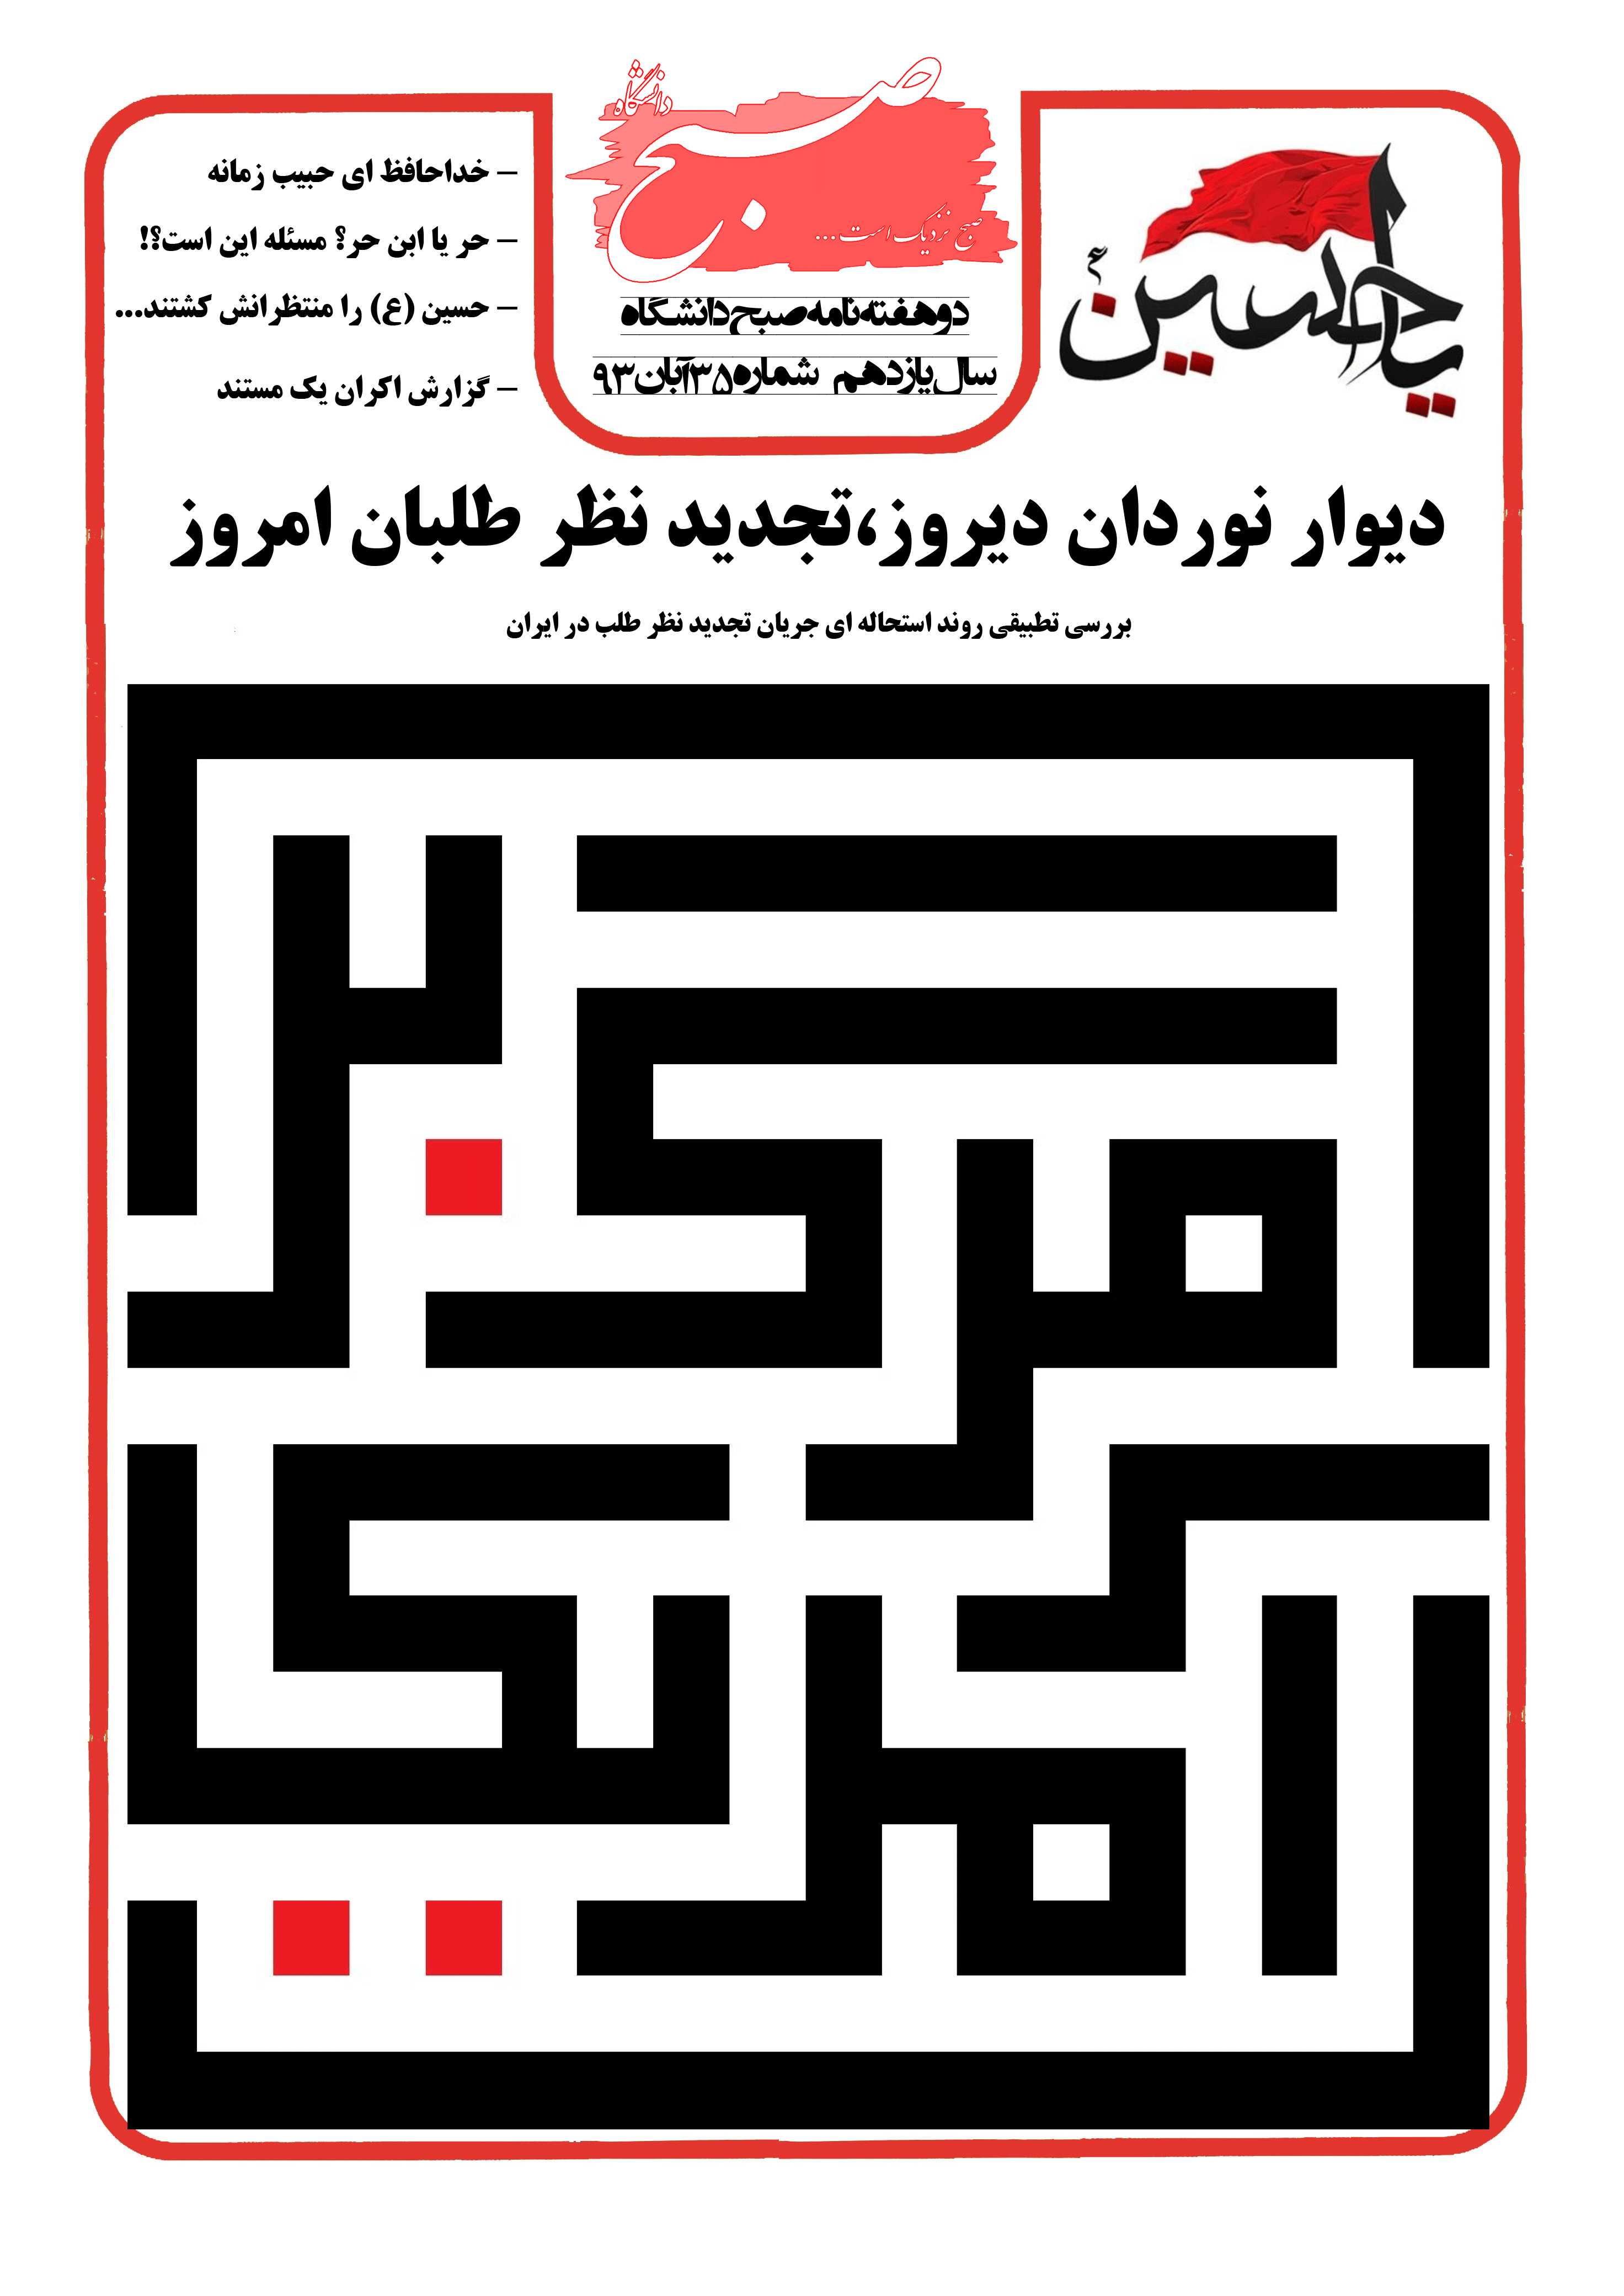 نشریه صبح دانشگاه شماره 35 جامعه اسلامی دانشگاه صنعتی اصفهان